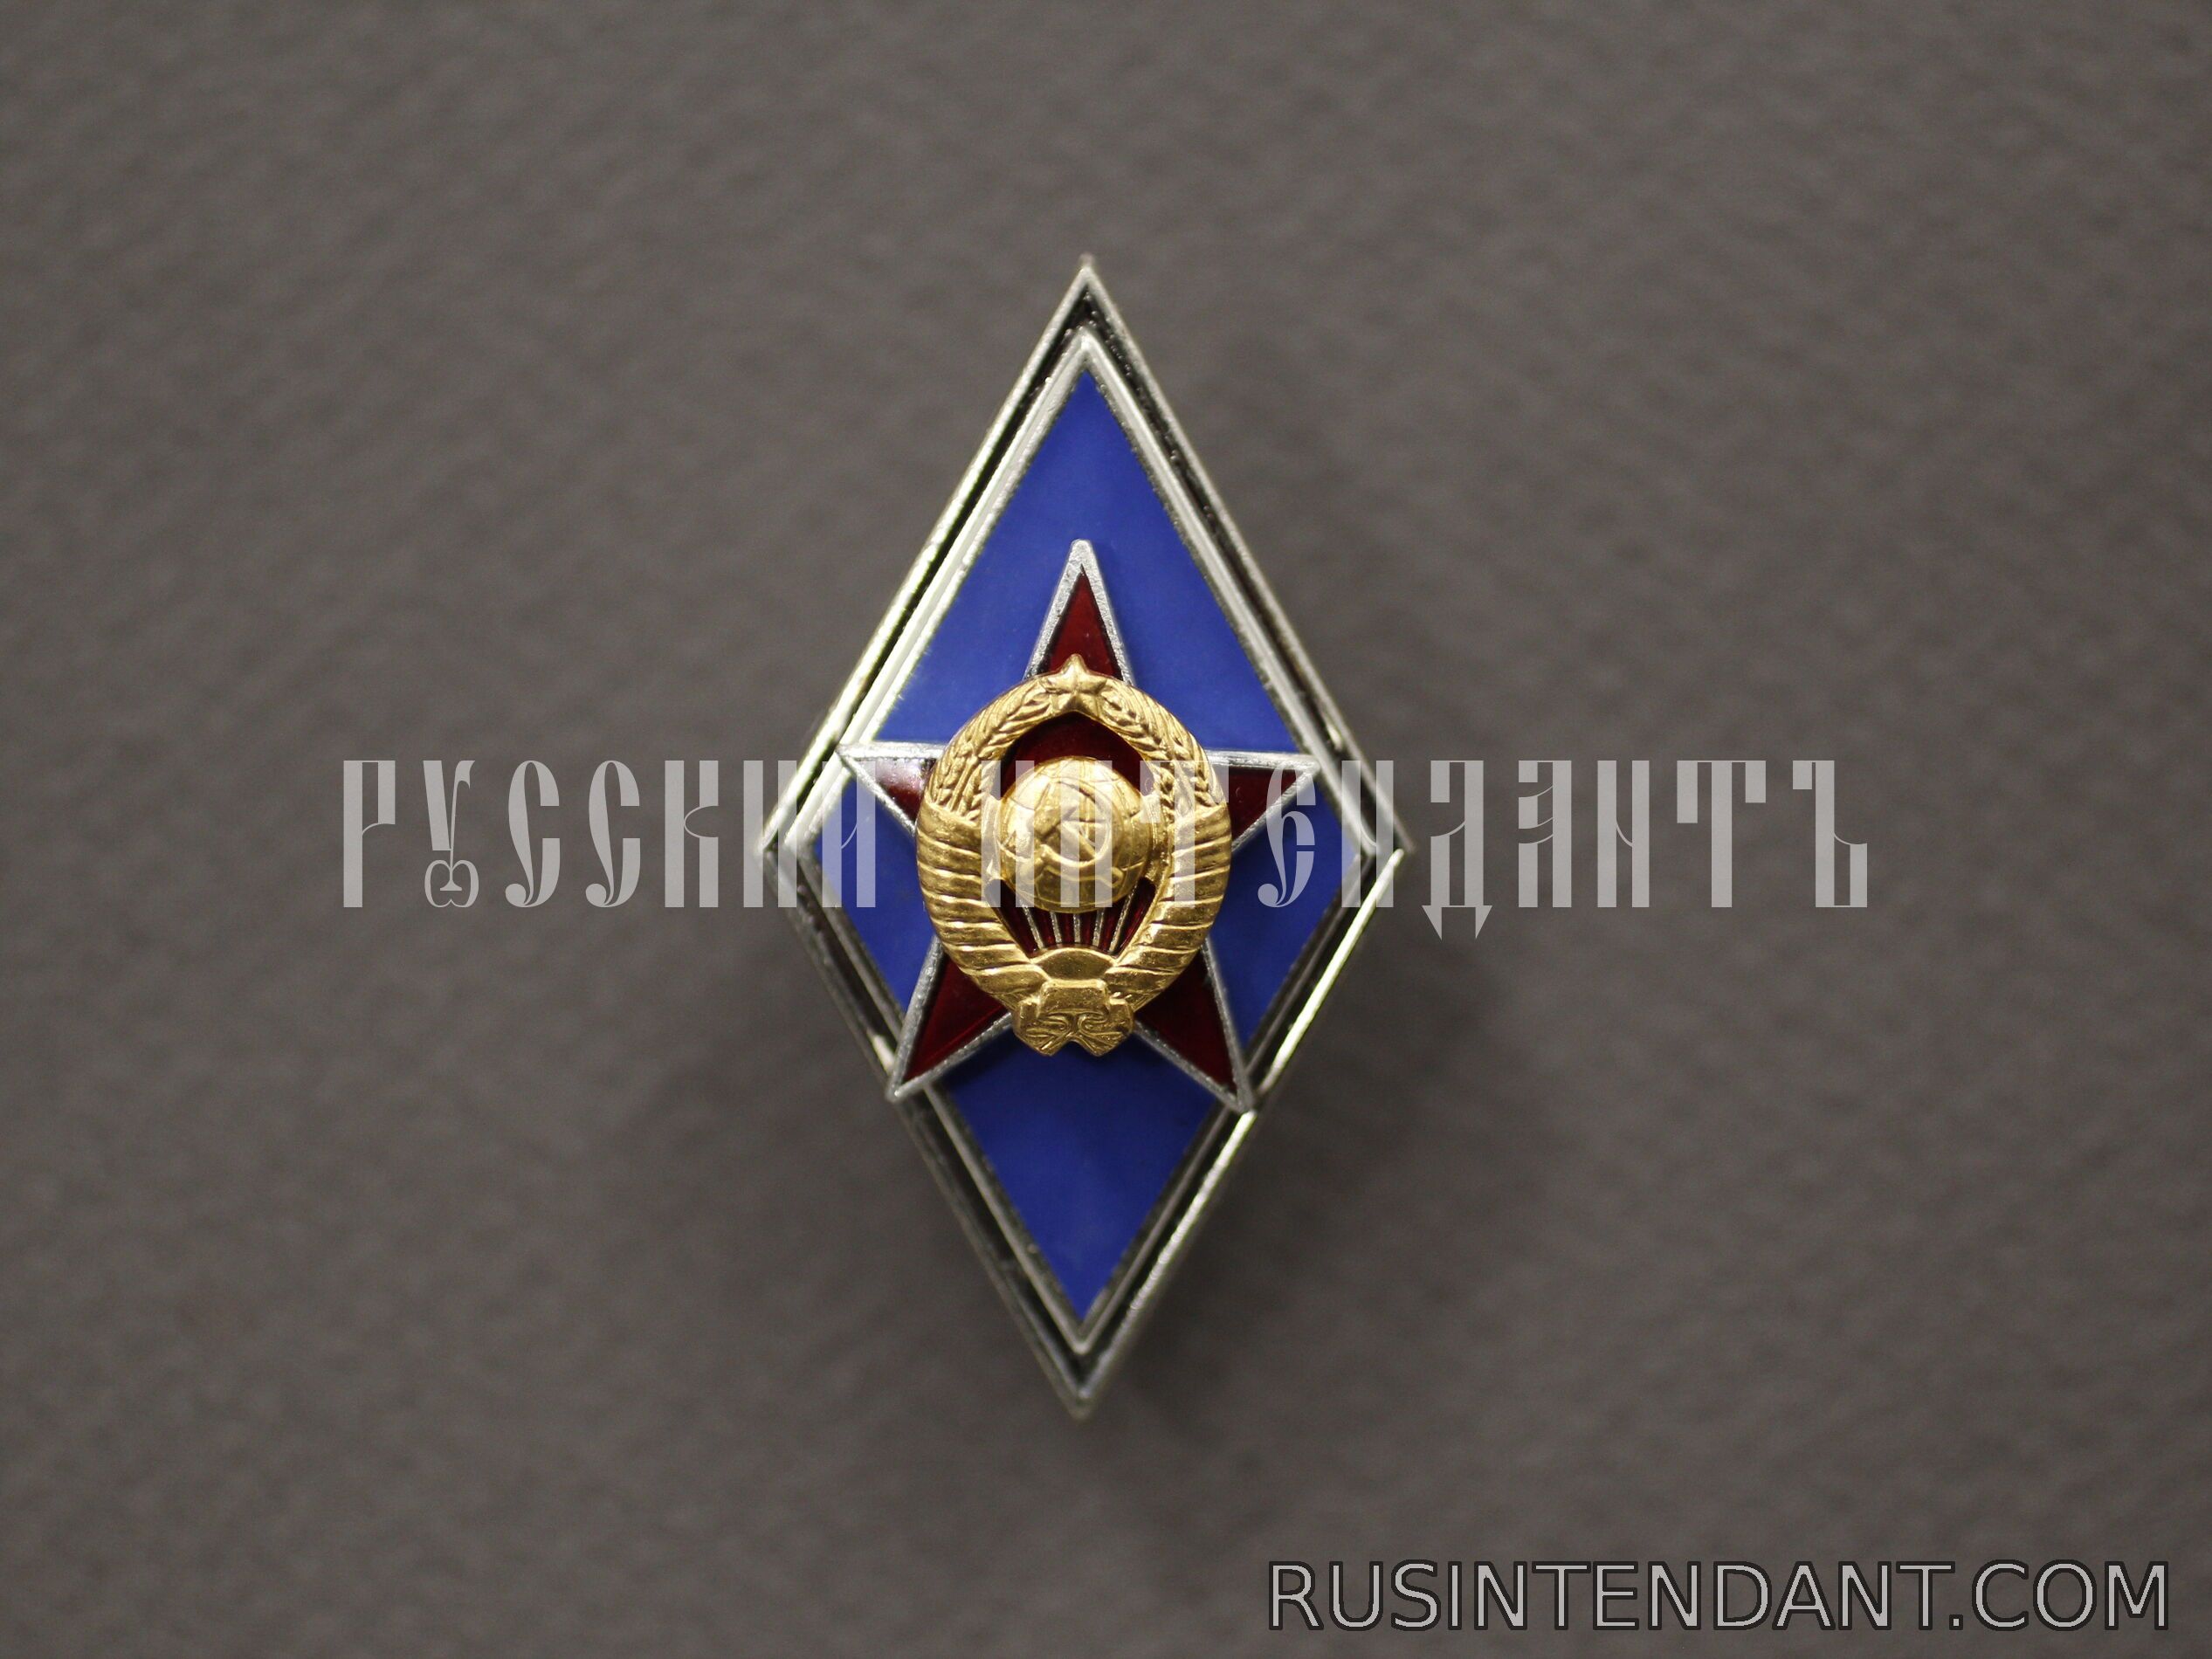 Фото 1: Знак «Высшее военное училище СССР» 